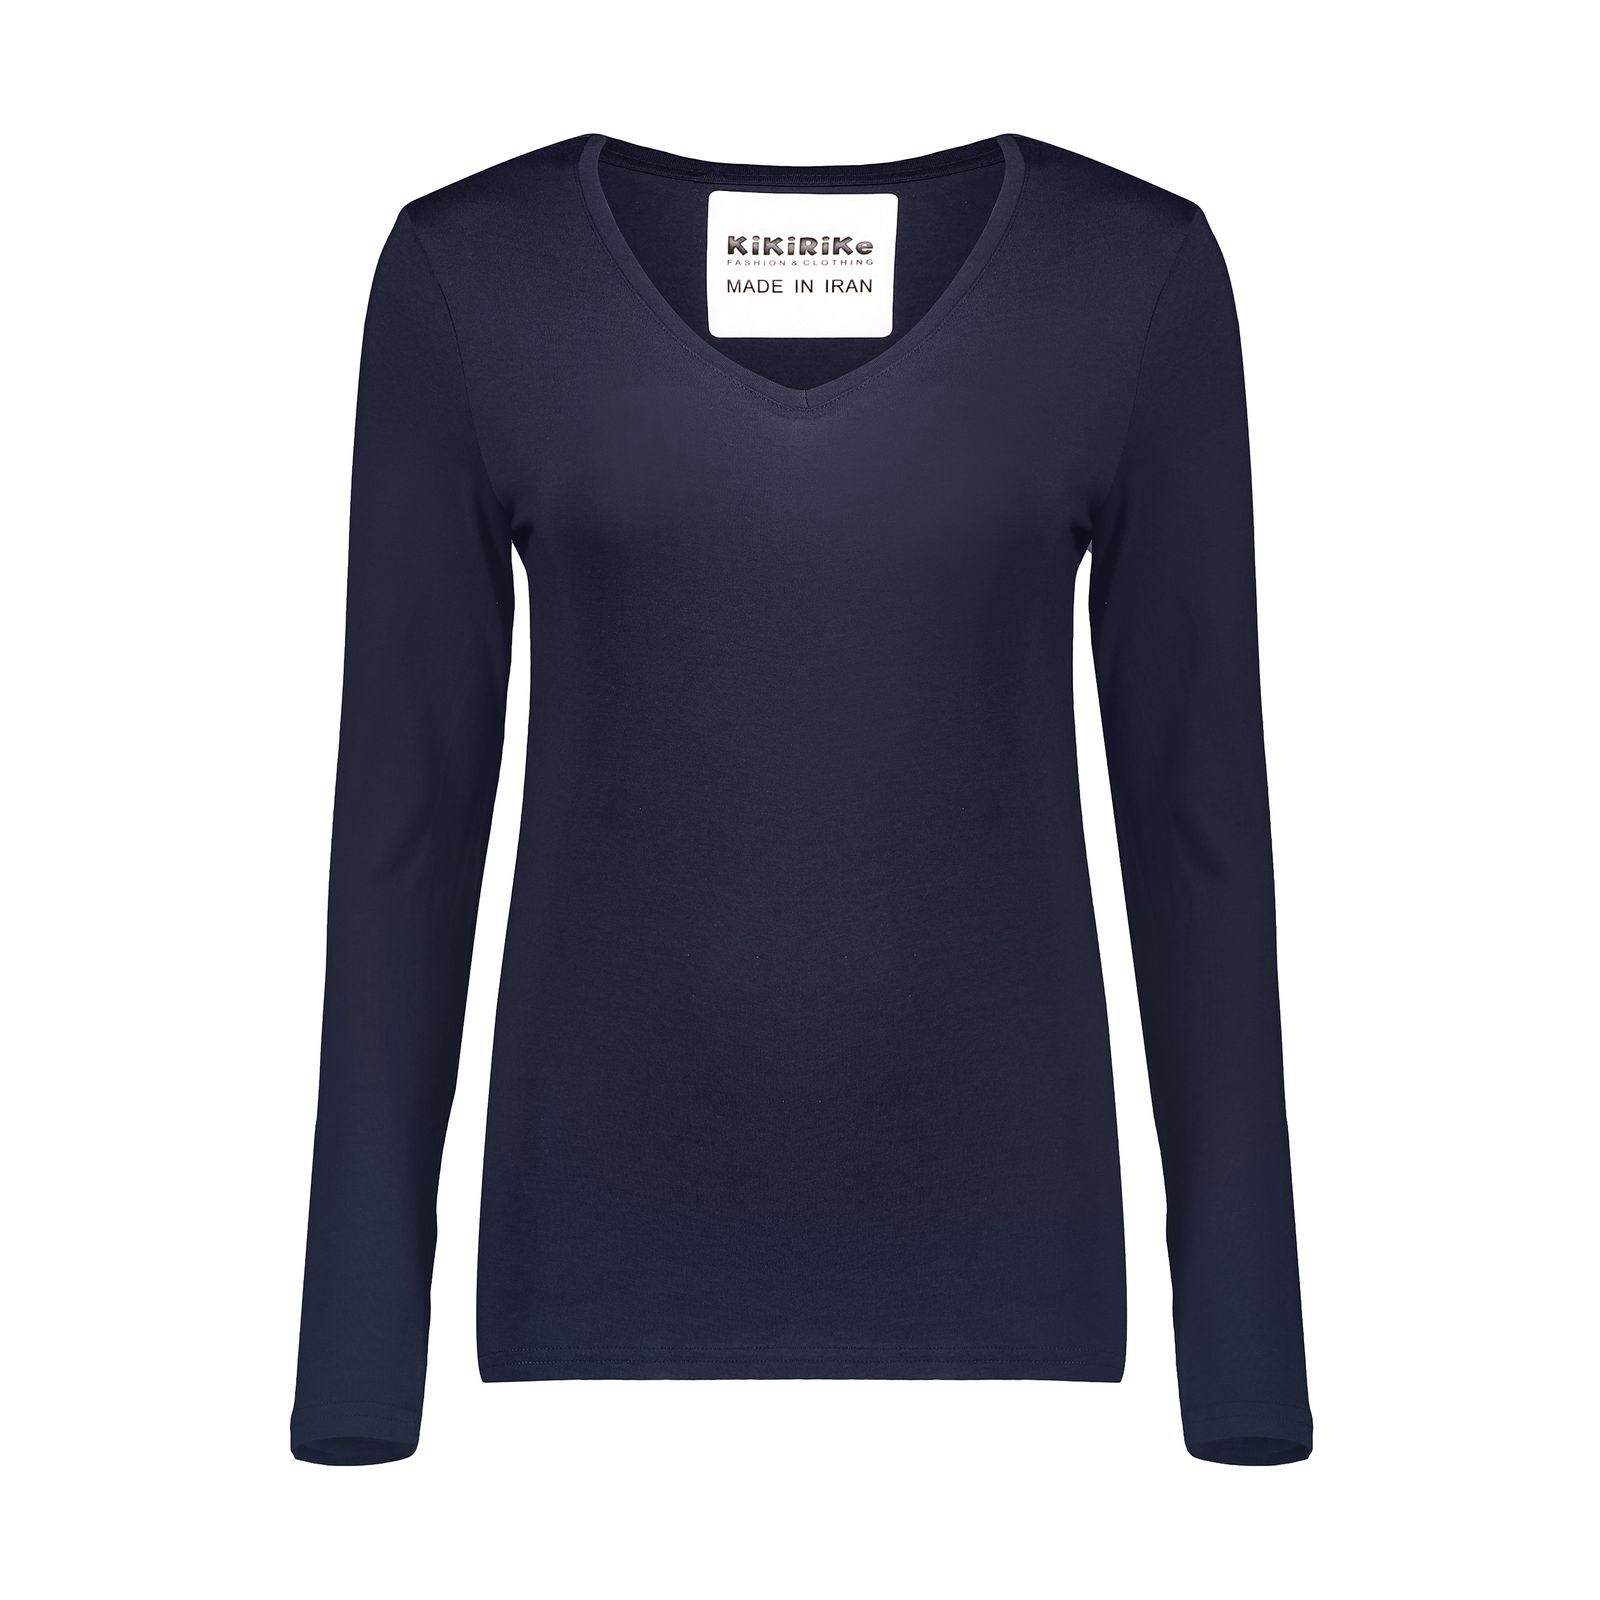 تی شرت زنانه کیکی رایکی مدل BB20155-200